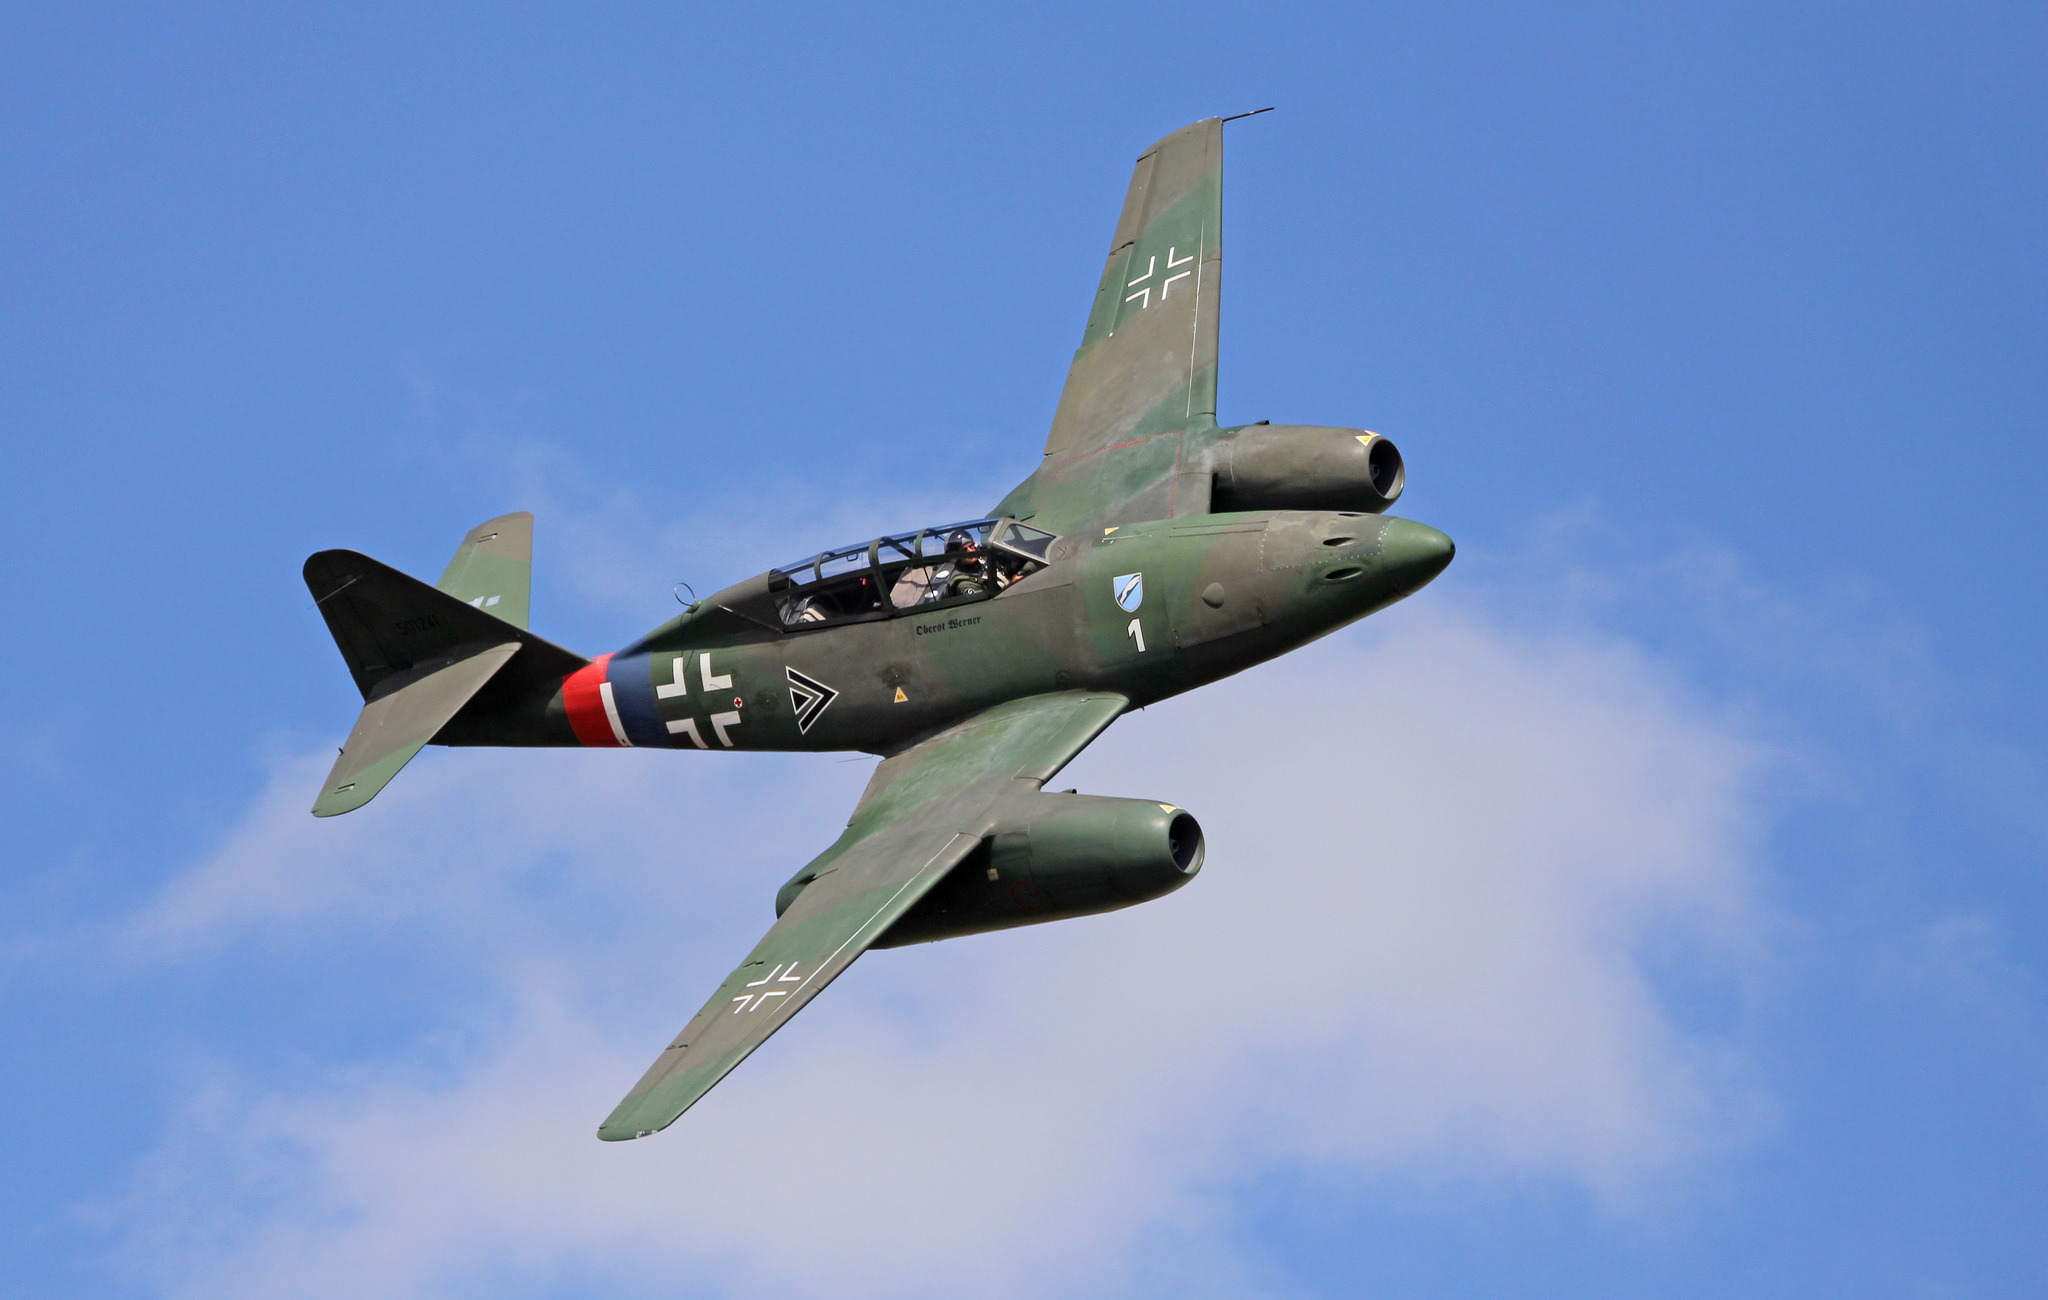 Wallpaper Messerschmitt Me Jet Fighter Bomber Reconnaissance